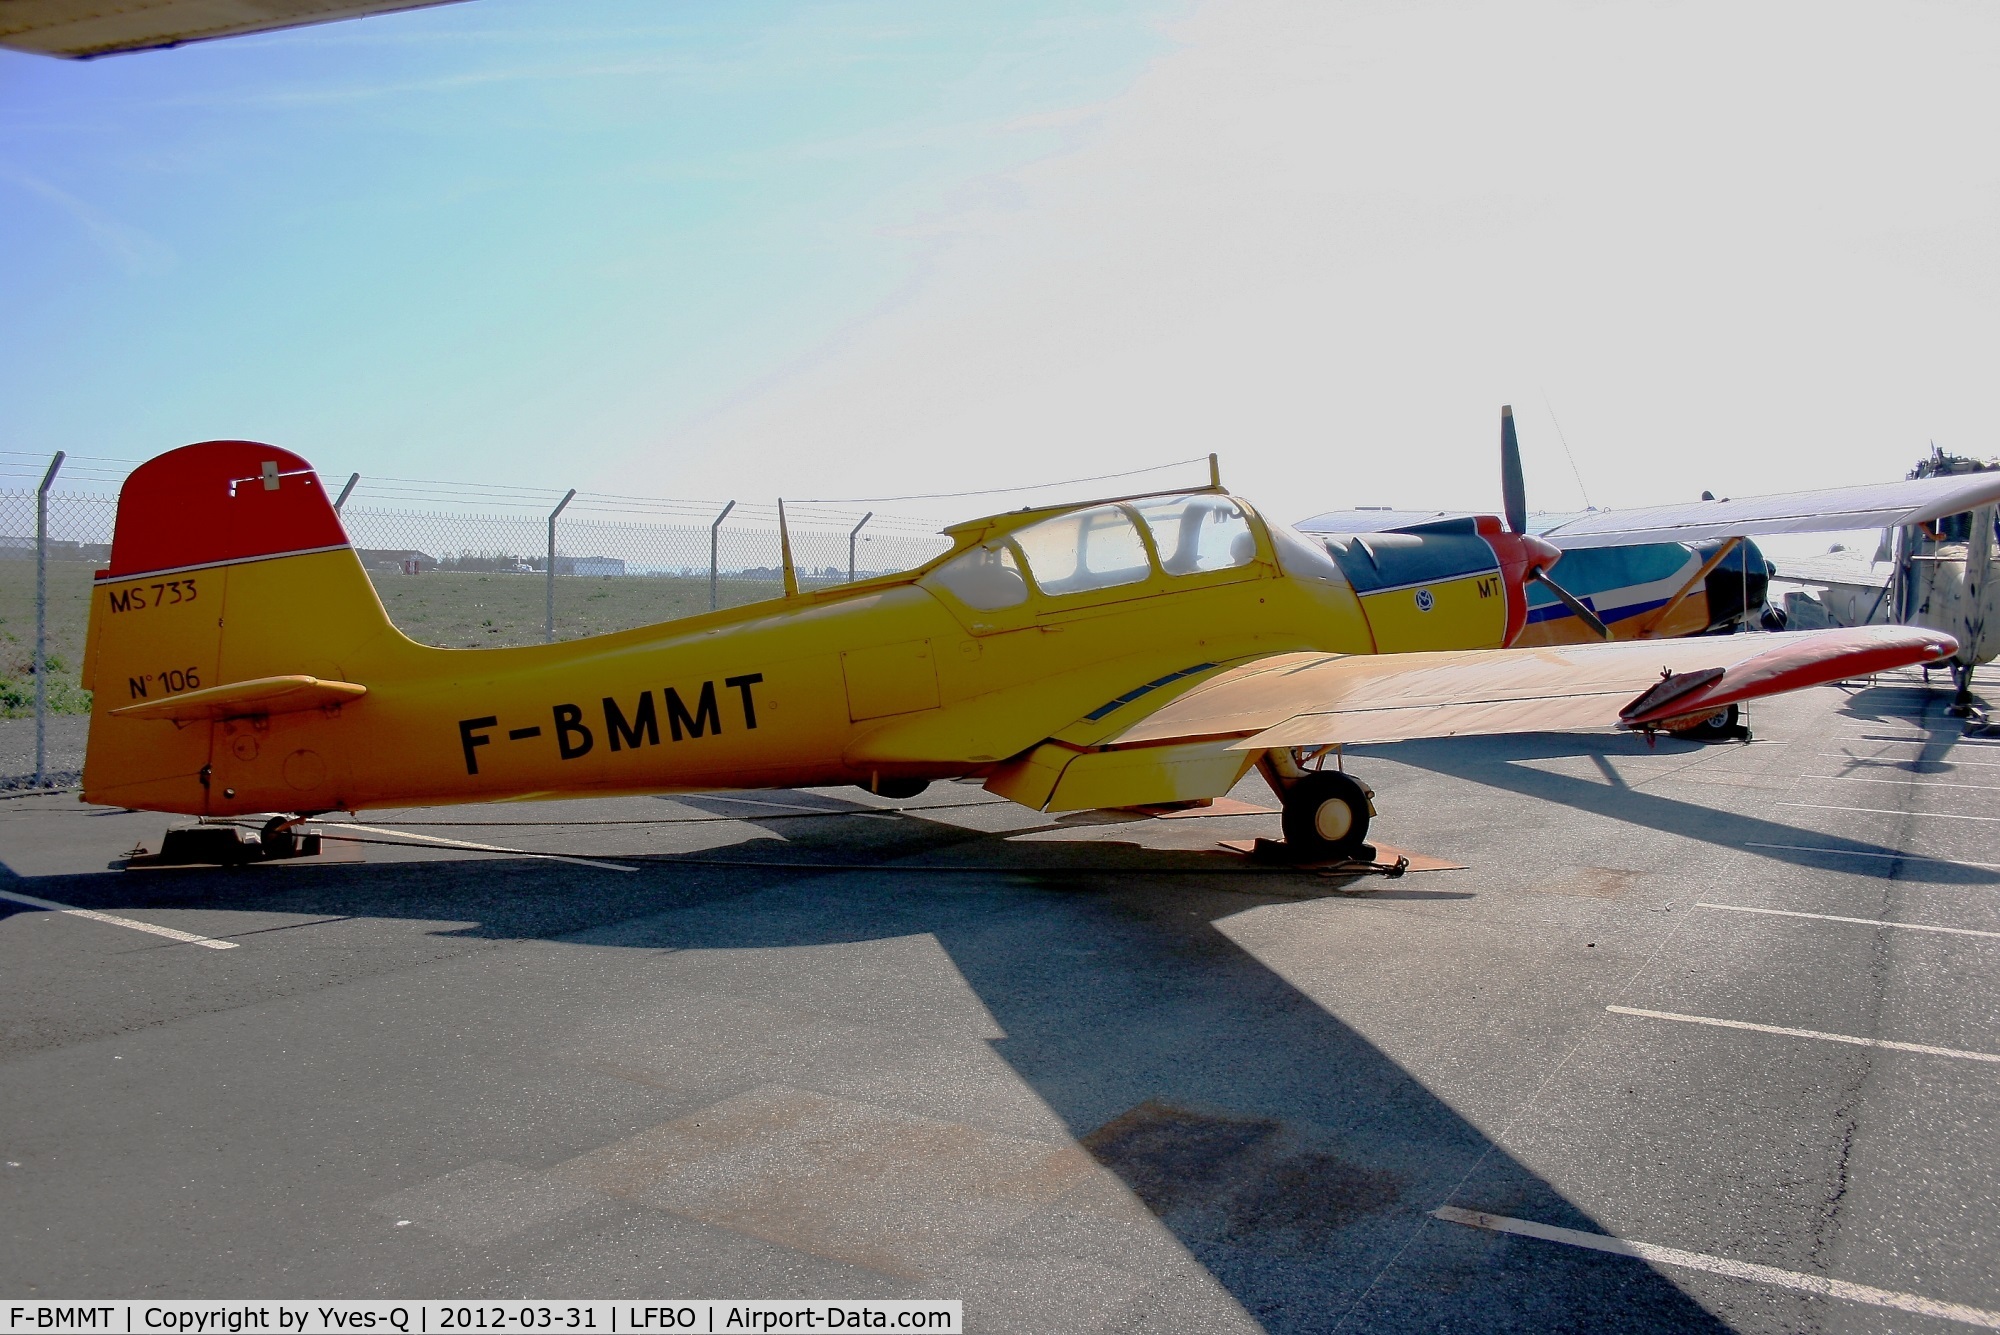 F-BMMT, Morane-Saulnier MS-733 Alcyon C/N 106, Morane-Saulnier MS-733 Alcyon, Les Ailes Anciennes Toulouse-Blagnac Airport (LFBO)